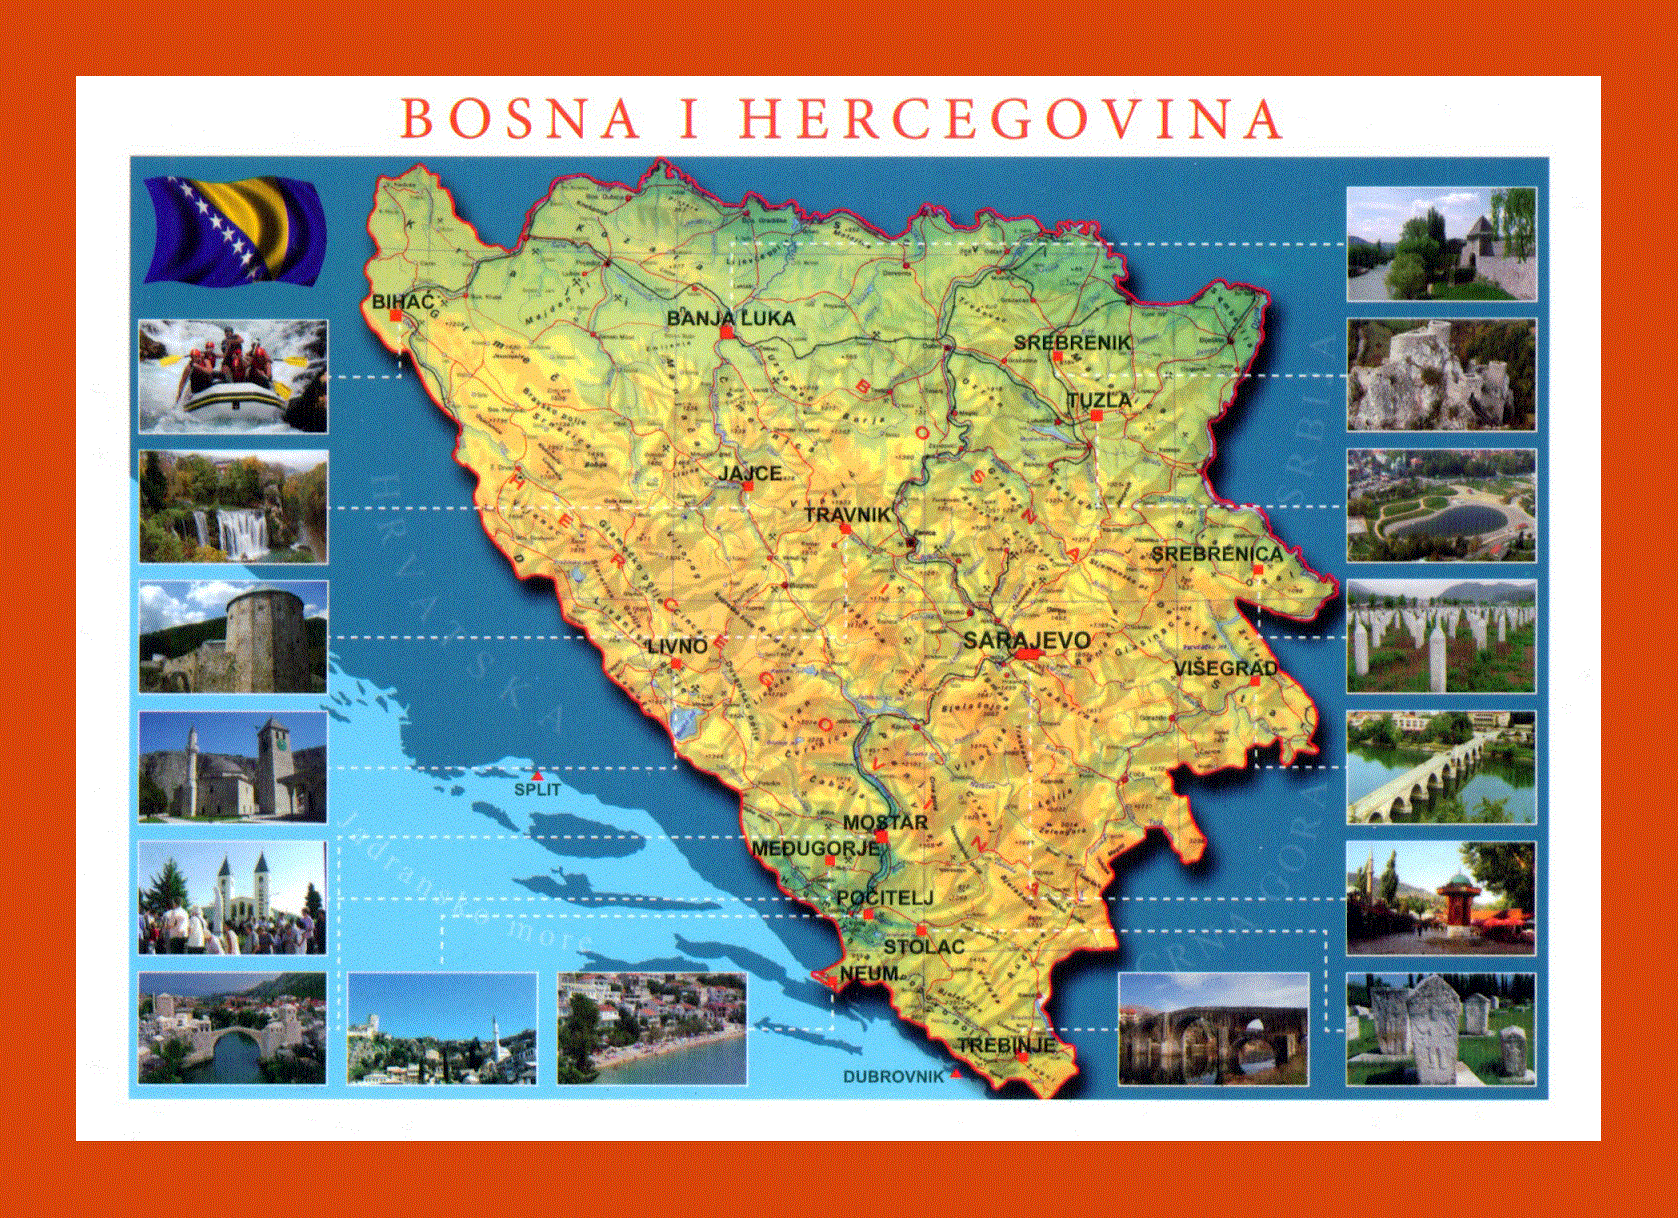 Босния и герцеговина на карте. Босния и Герцеговина туристическая карта. Босния и Герцеговина достопримечательности на карте. Карта туризма в Боснии и Герцеговине. Карта Боснии с достопримечательностями.